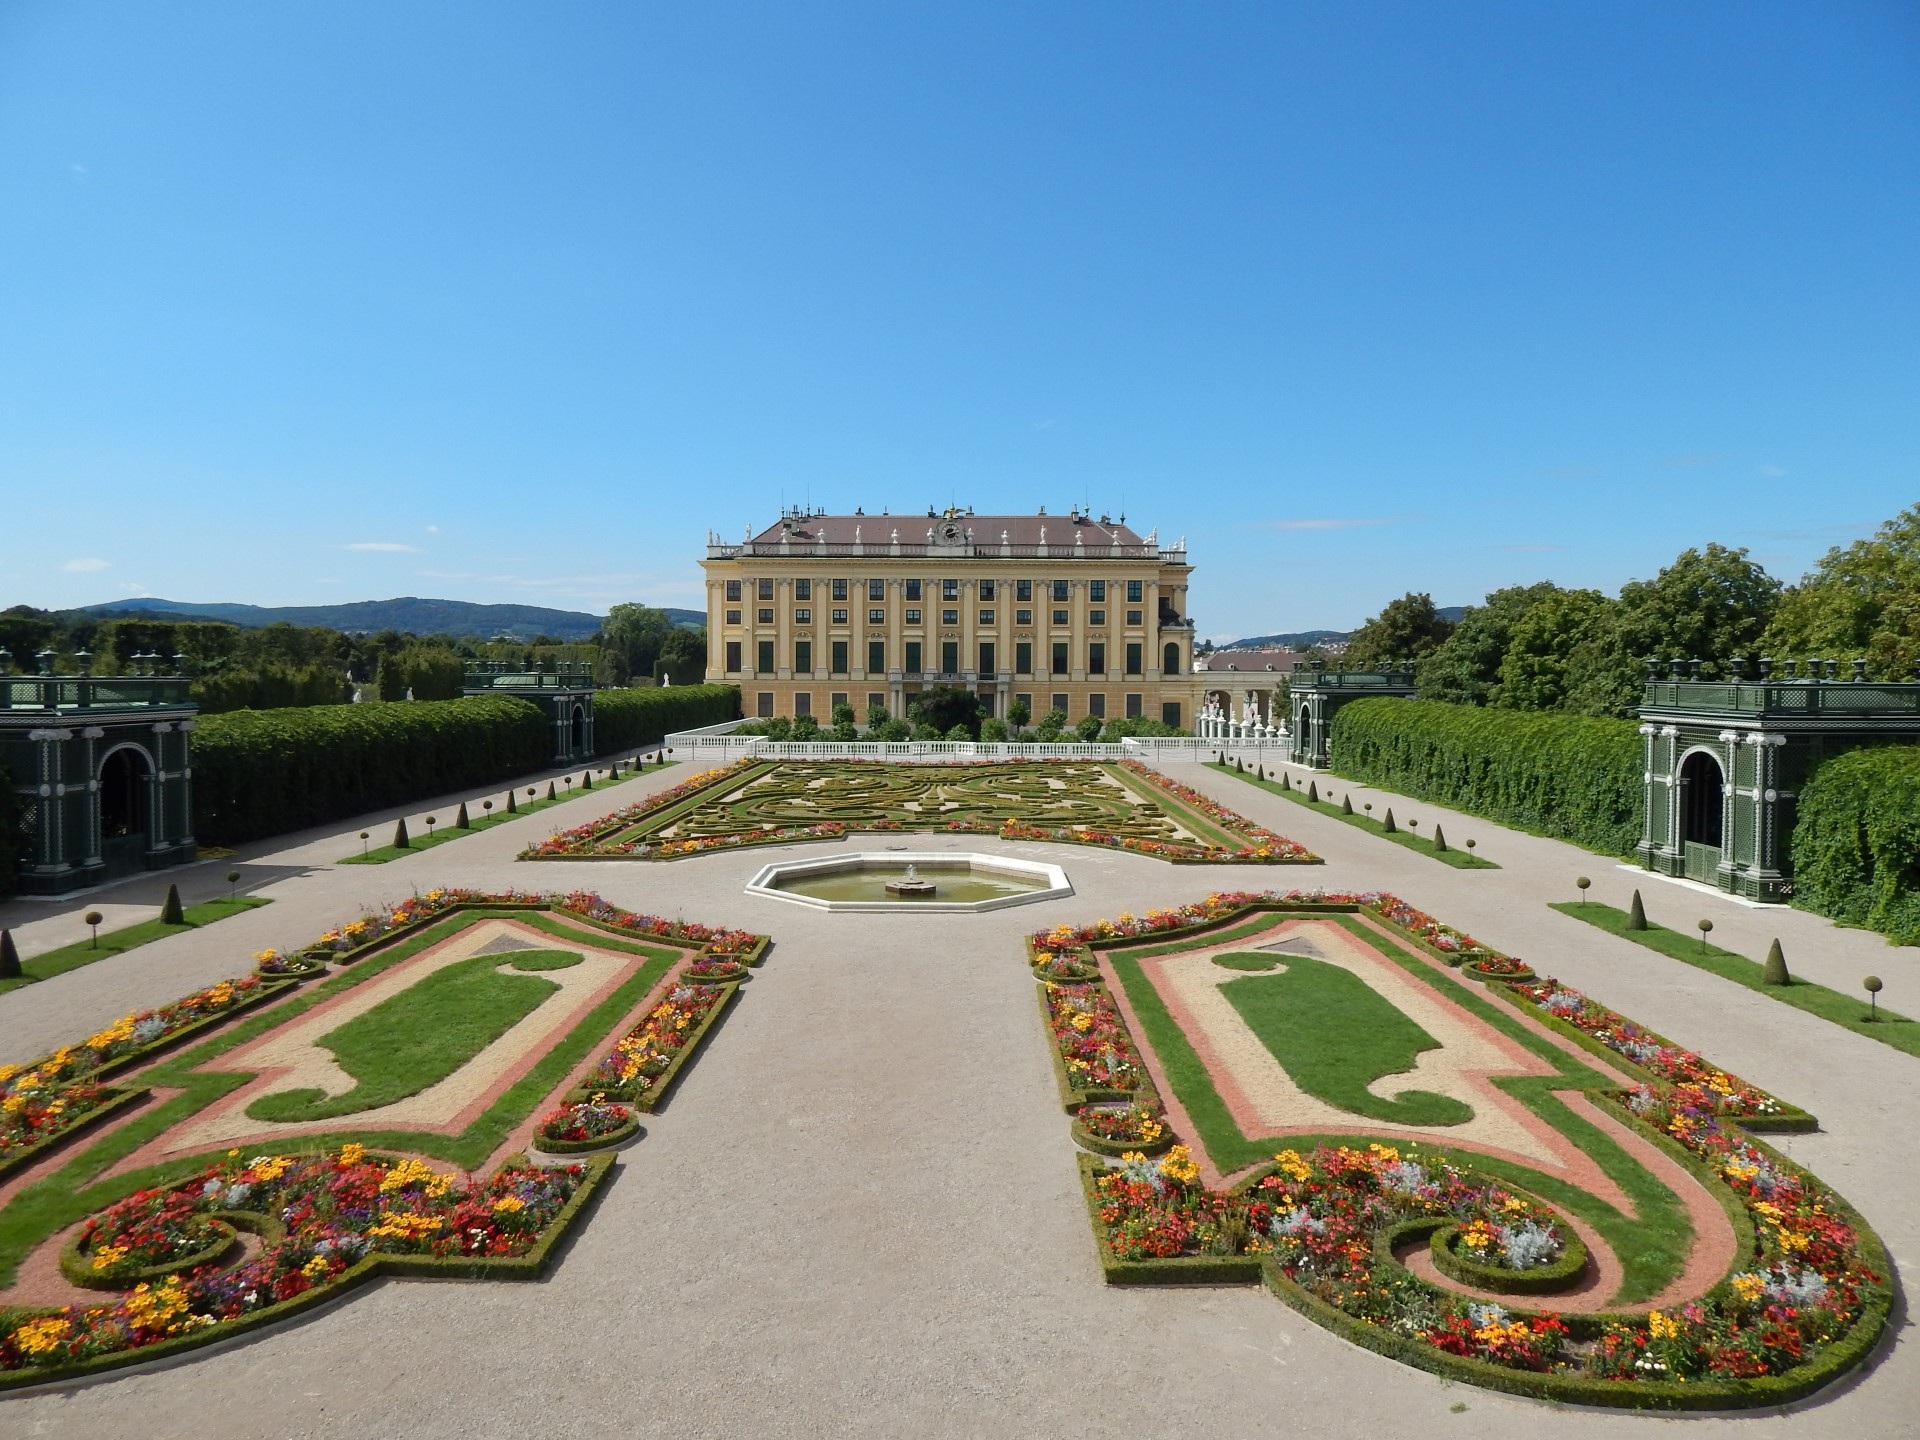 Palacio Schönbrunn de Viena